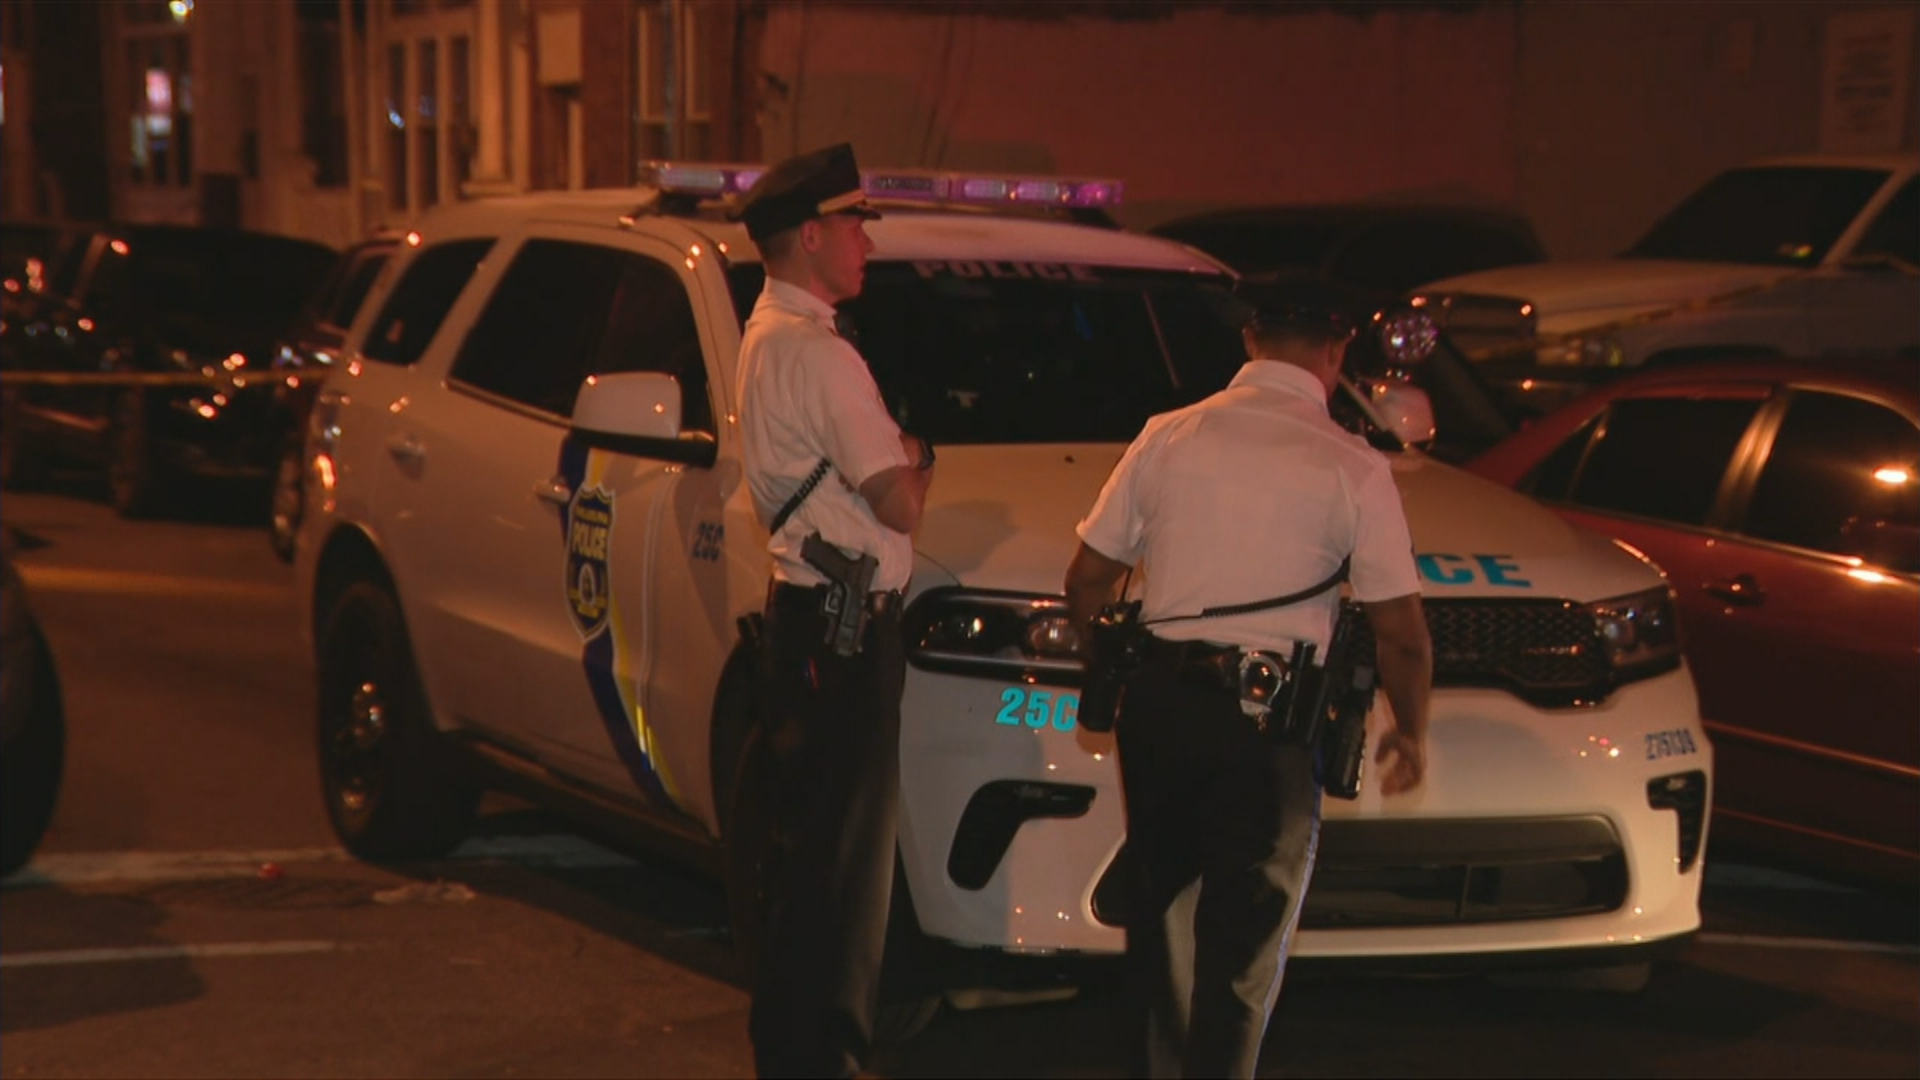 10 Separate Shootings In Philadelphia Leave 2 Dead, 9 Others Injured: Police